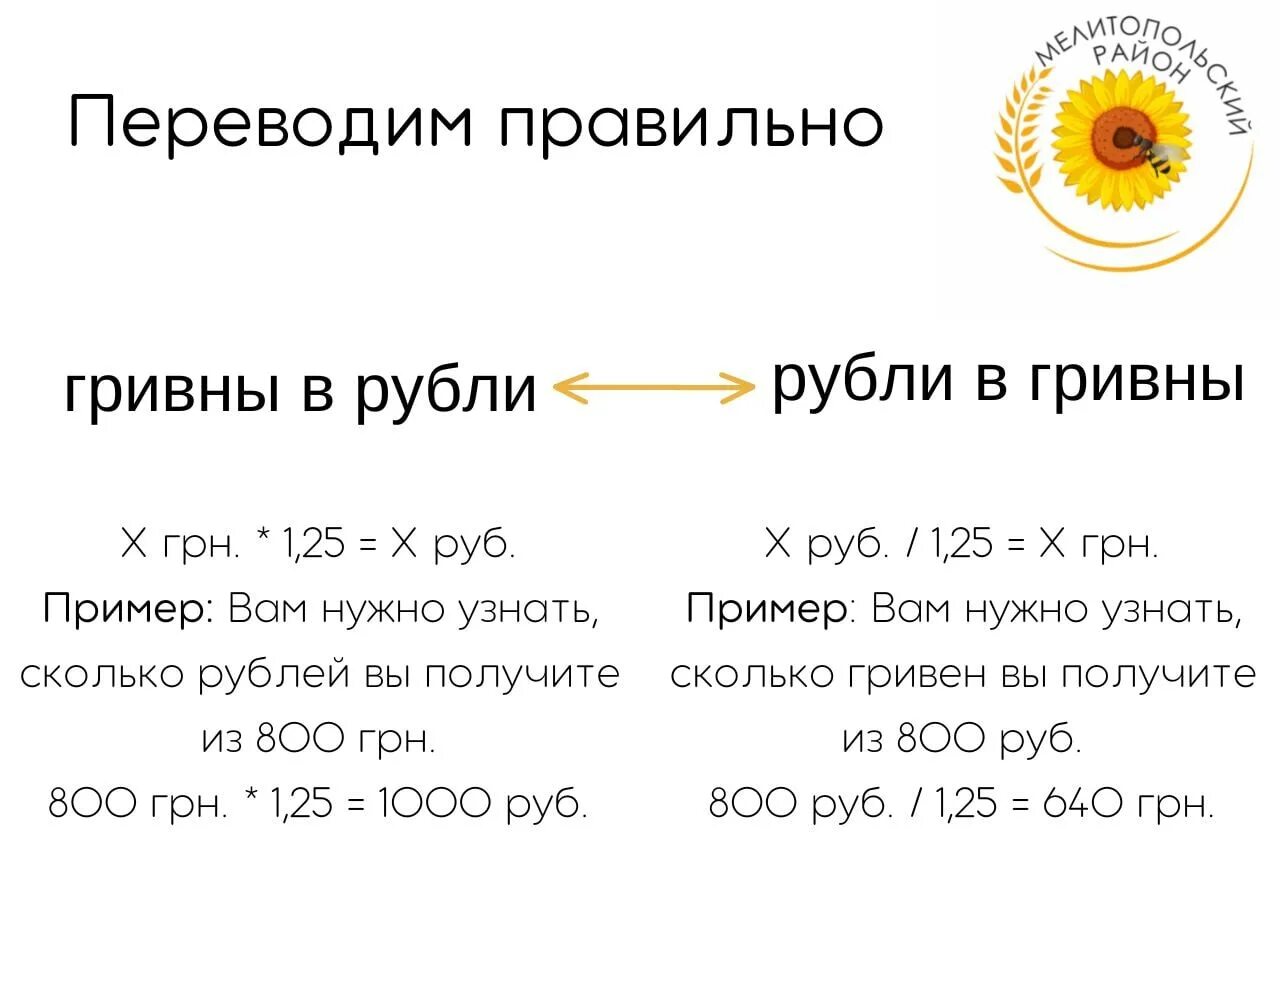 Перевести гривны в рубли по курсу